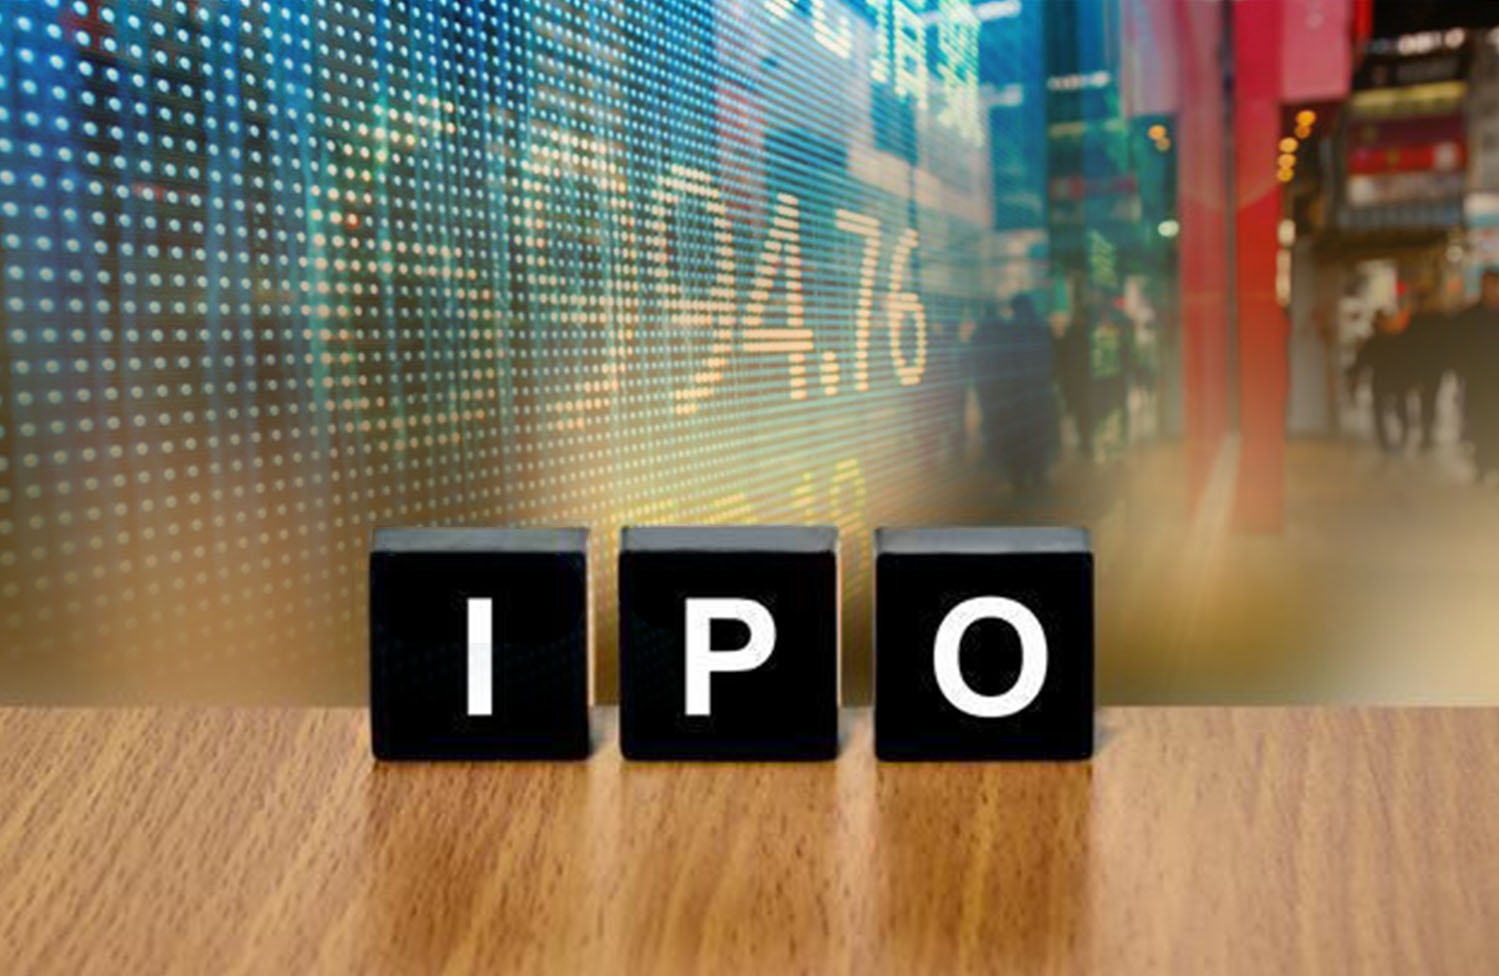 IPO stock price